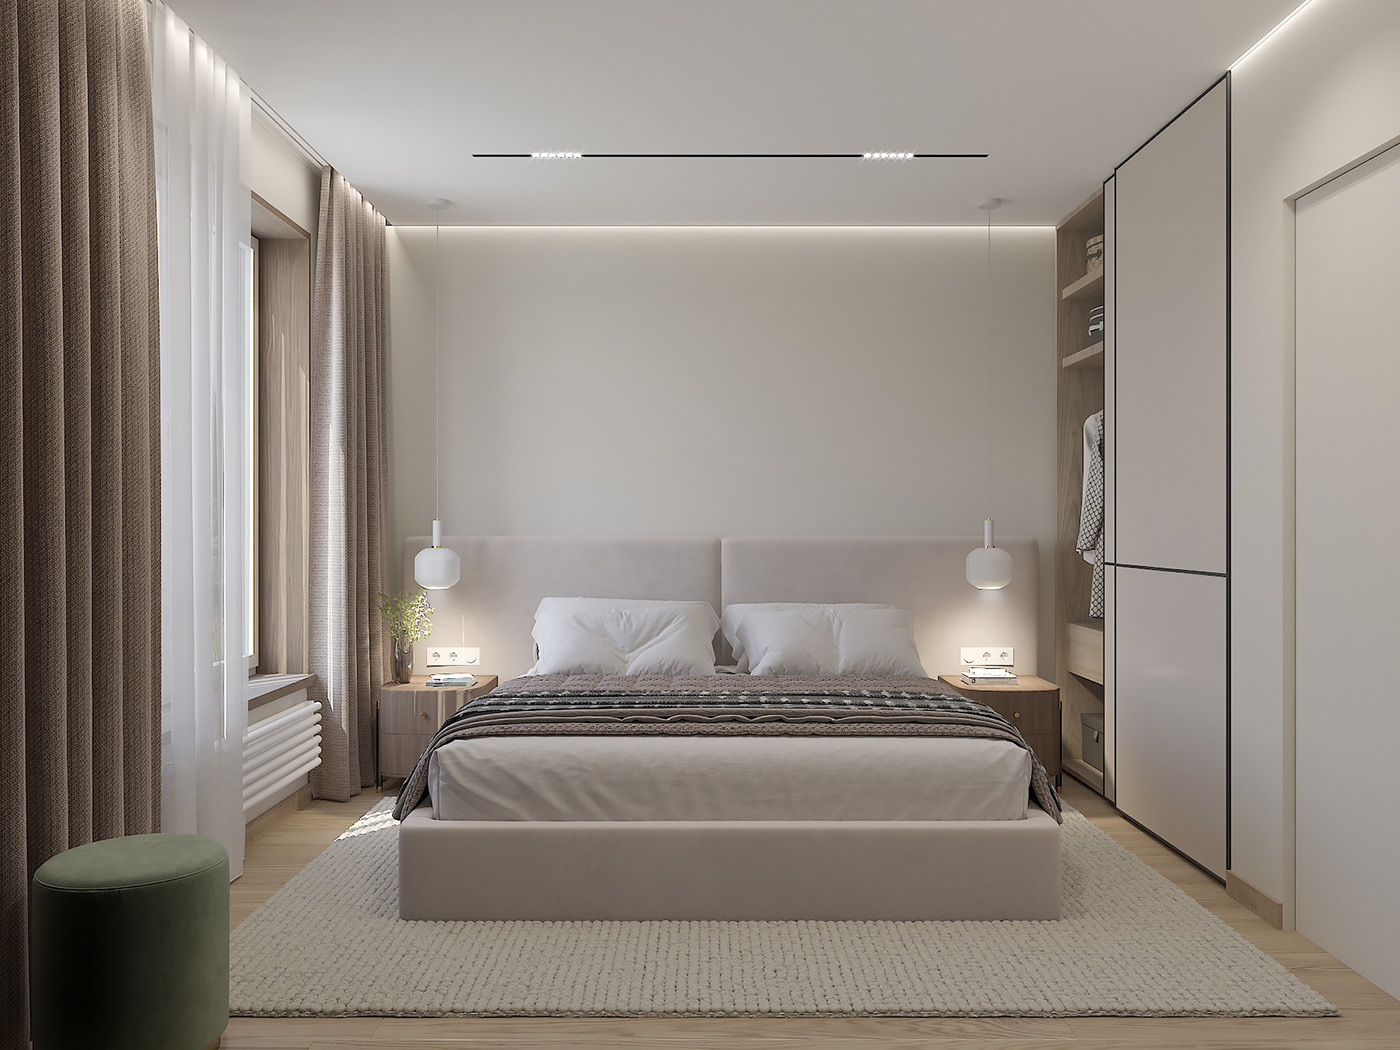 3ds max design Interior визуализация дизайн спальни уютная спальня